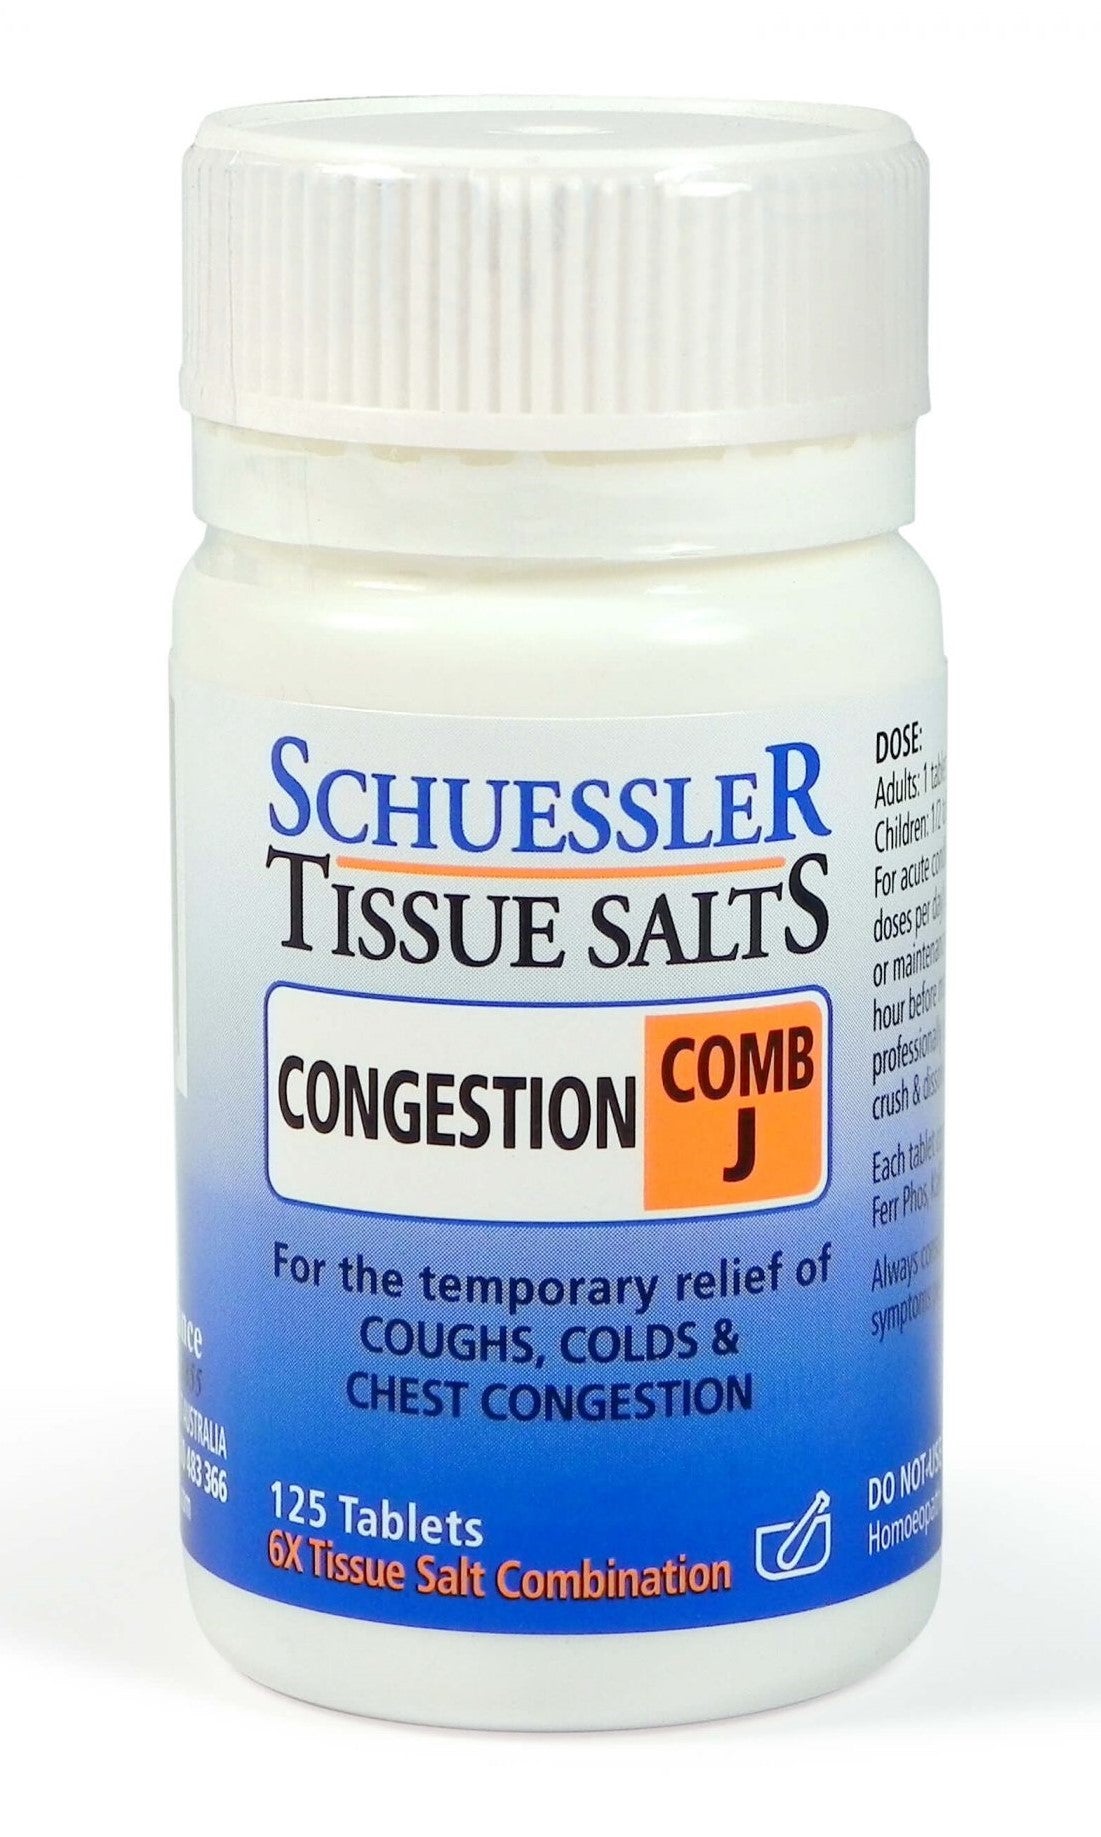 Schuessler Tissue Salts Congestion Comb J Tablets 125